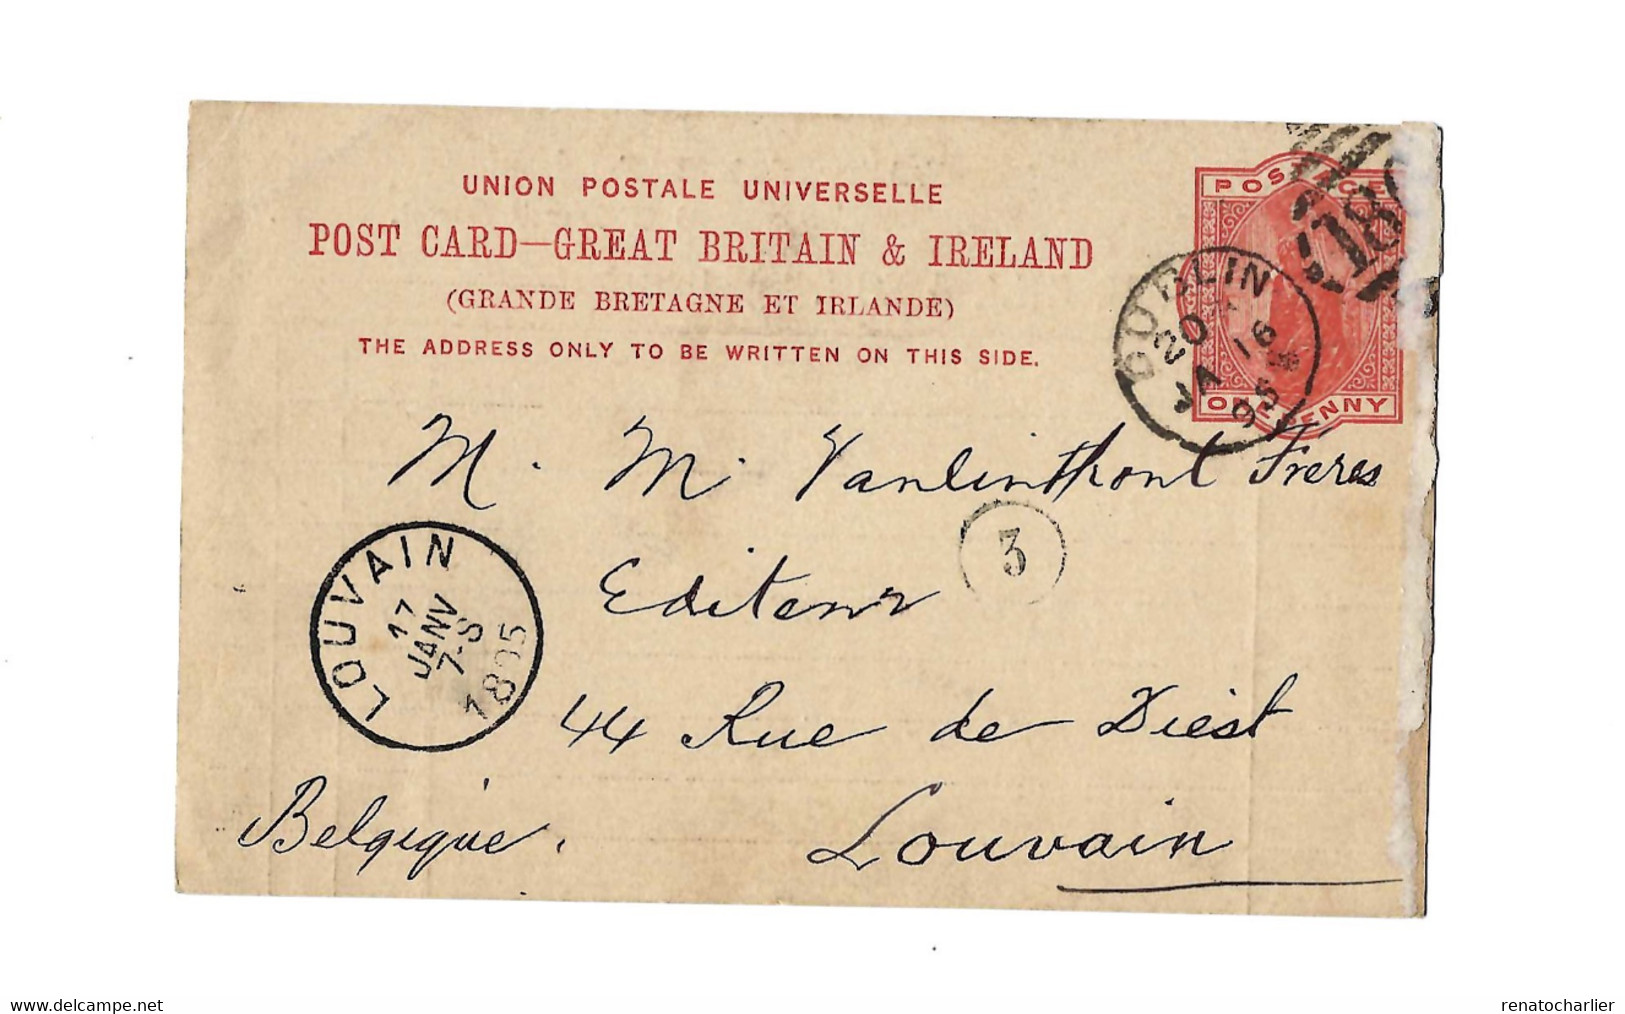 Entier Postal à 1 Penny.Expédié De Dublin à Louvain (Belgique) - Entiers Postaux